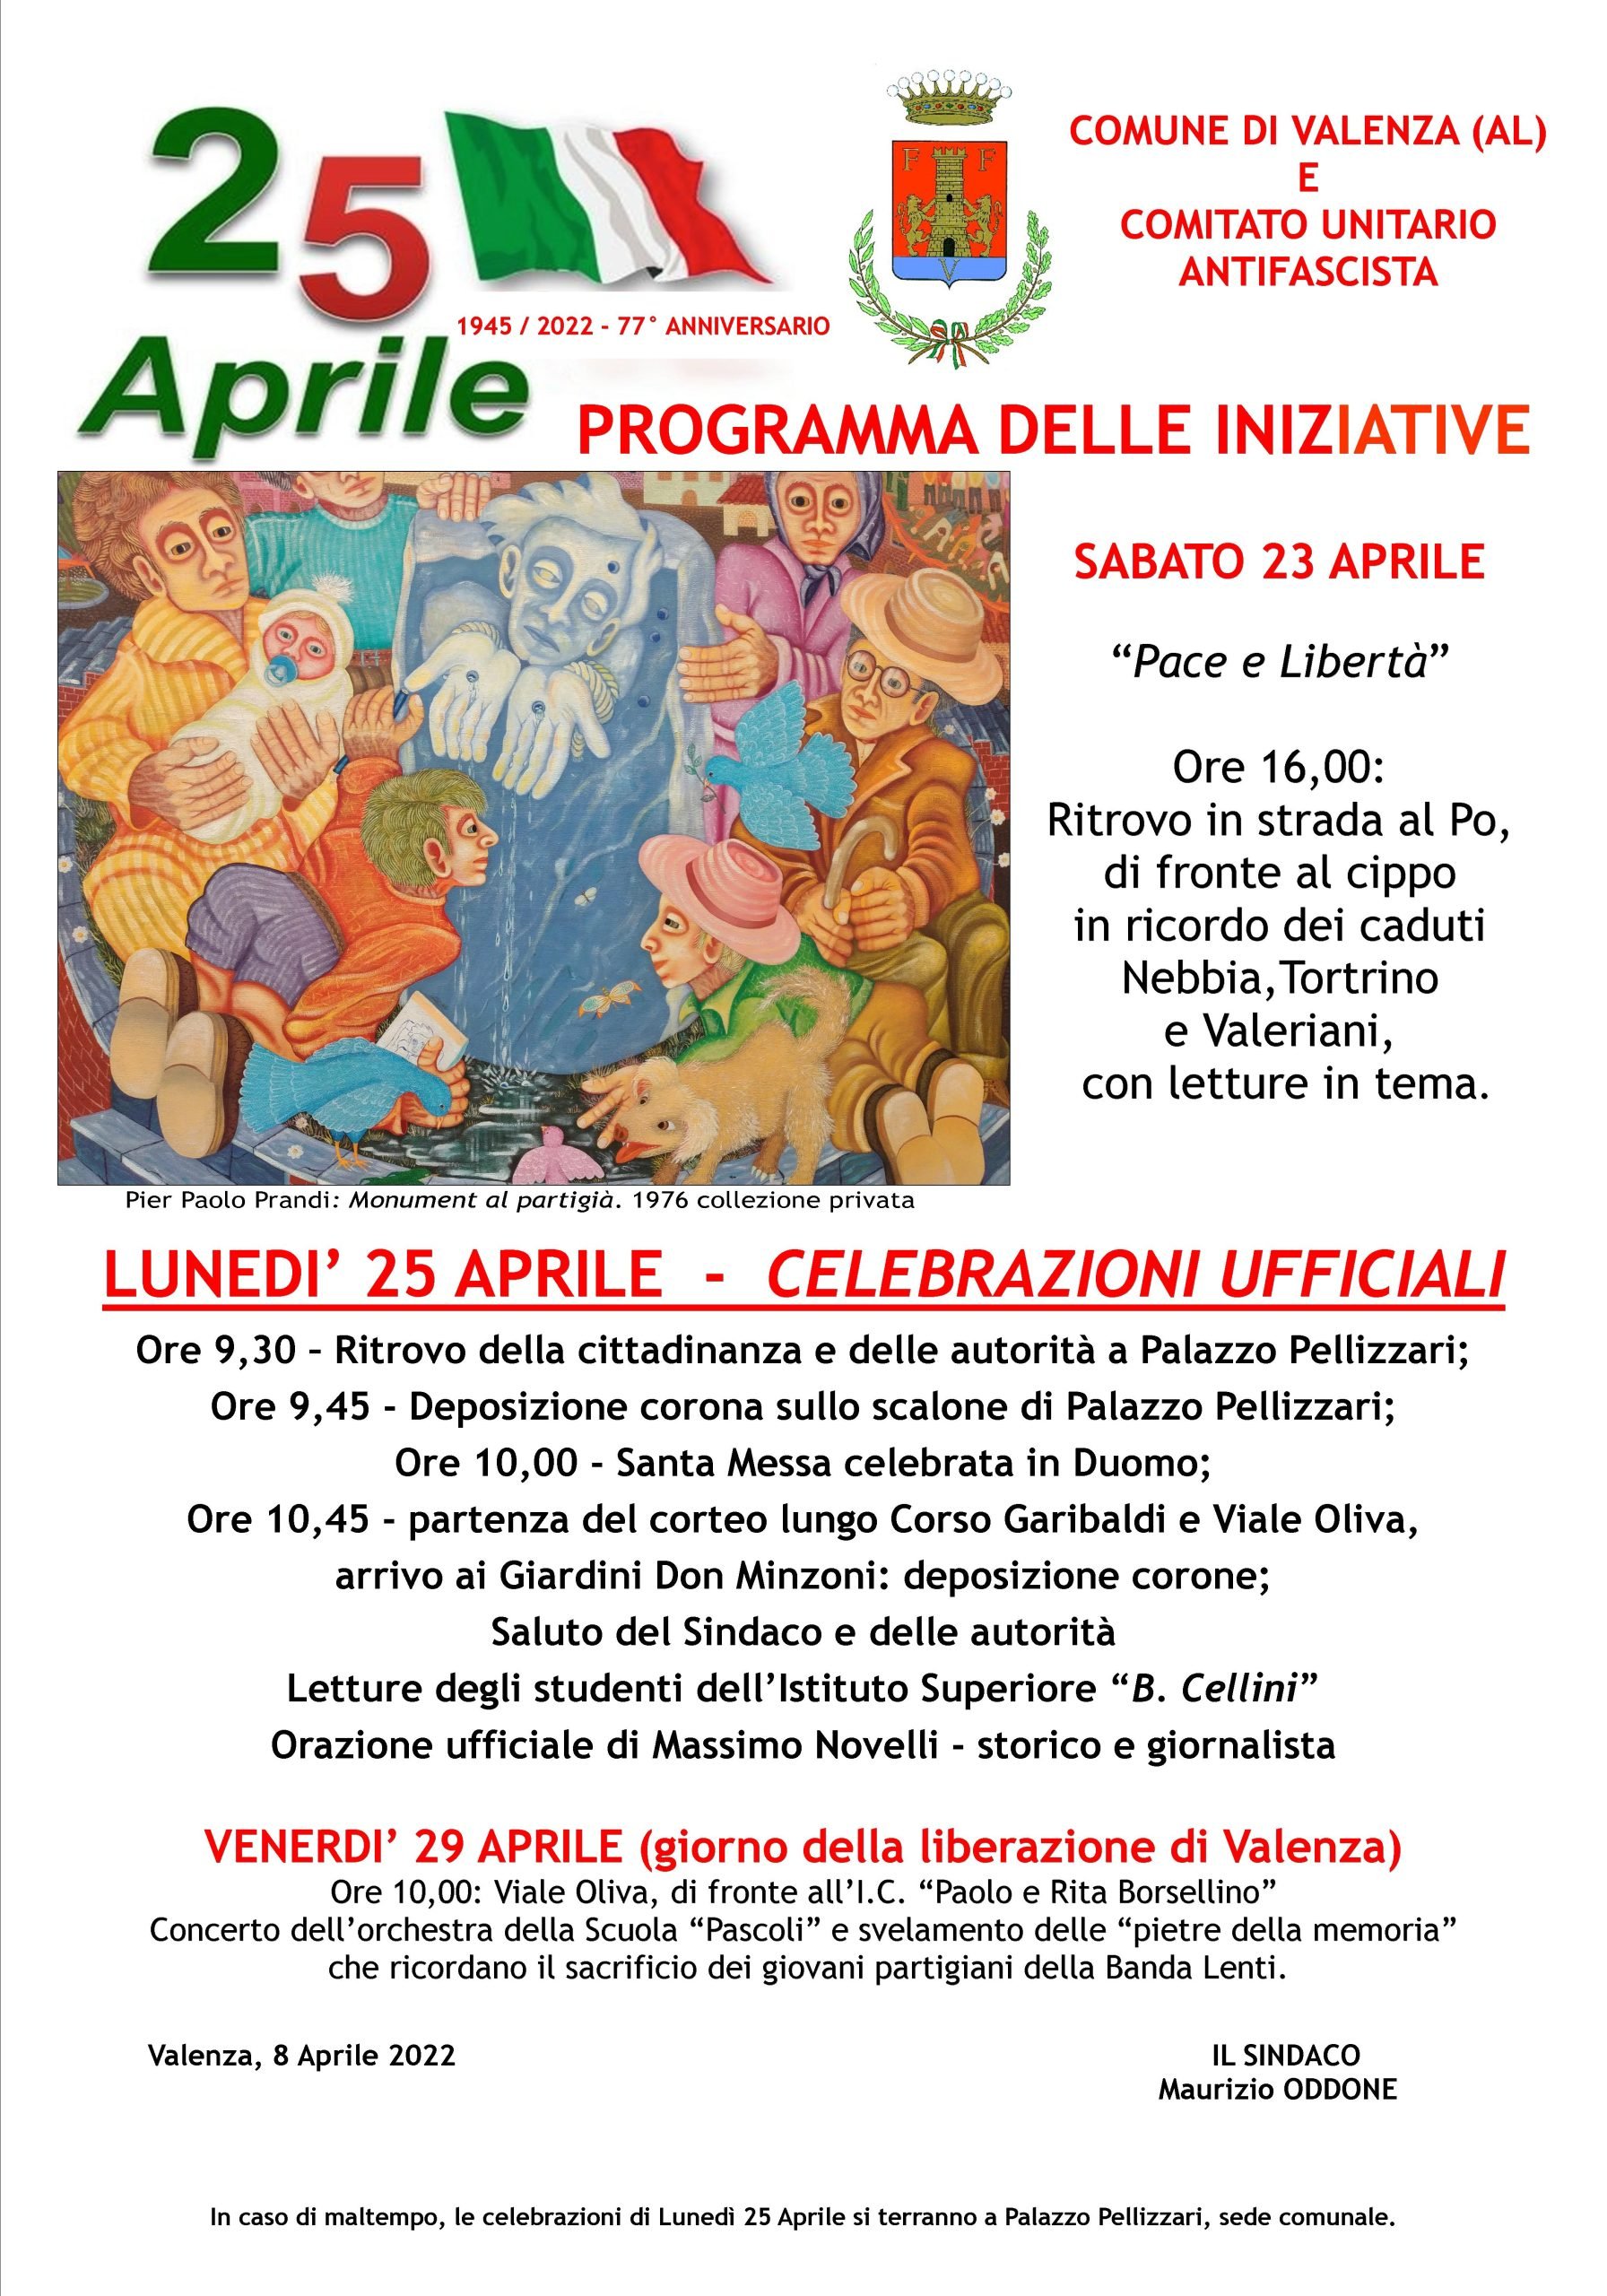 25 Aprile: il programma delle iniziative a Valenza